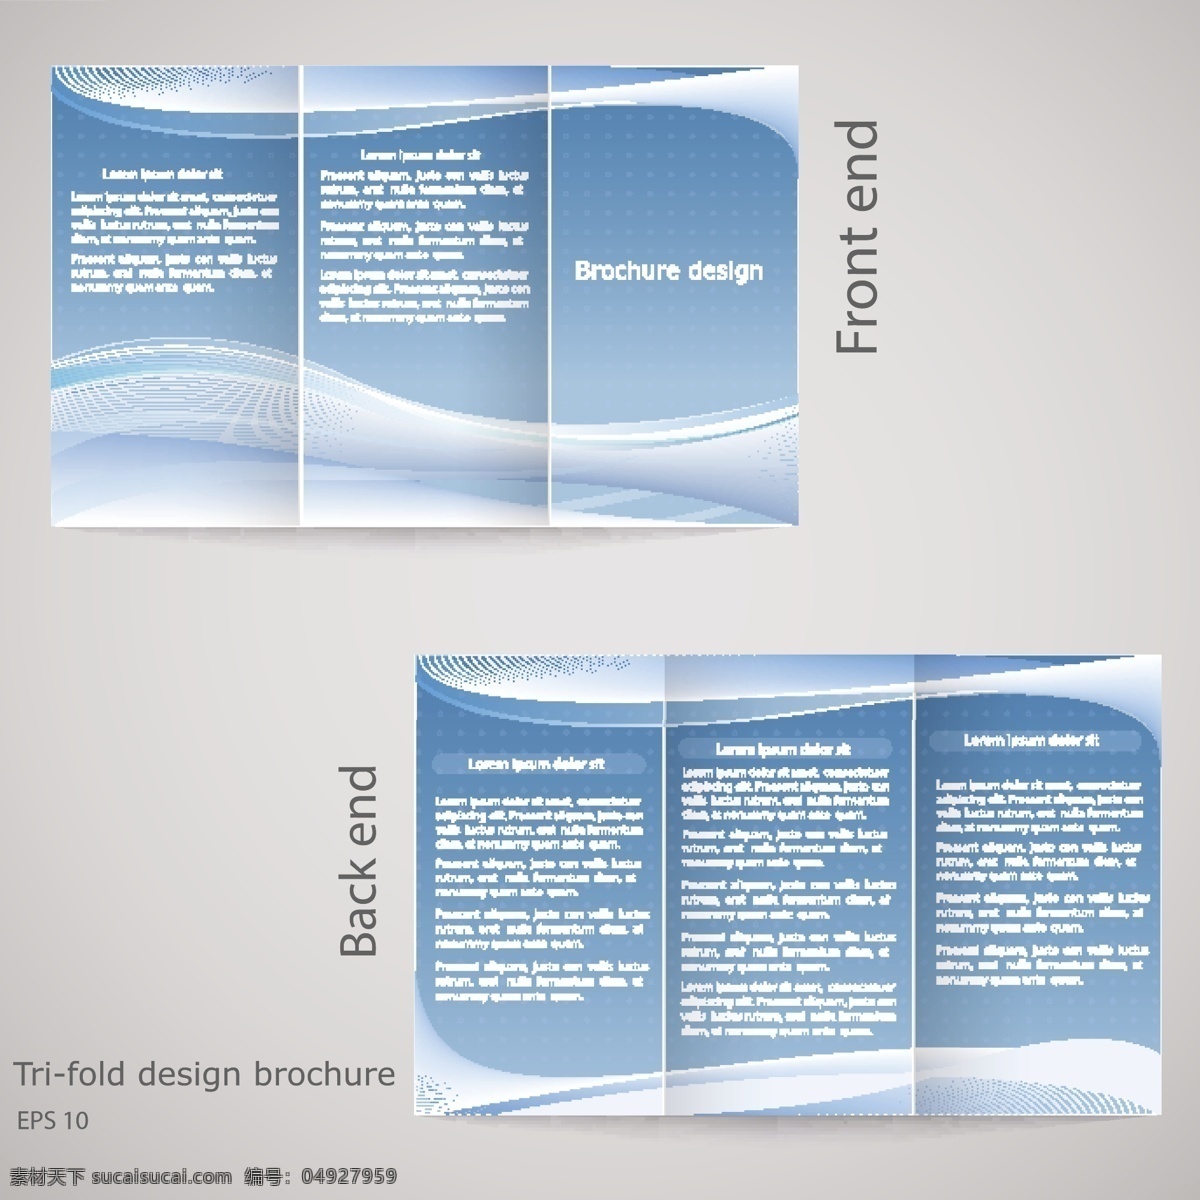 时尚动感折页 动感背景 折页设计 单页设计 创意排版 排版设计 时尚单页 画册设计 矢量素材 灰色